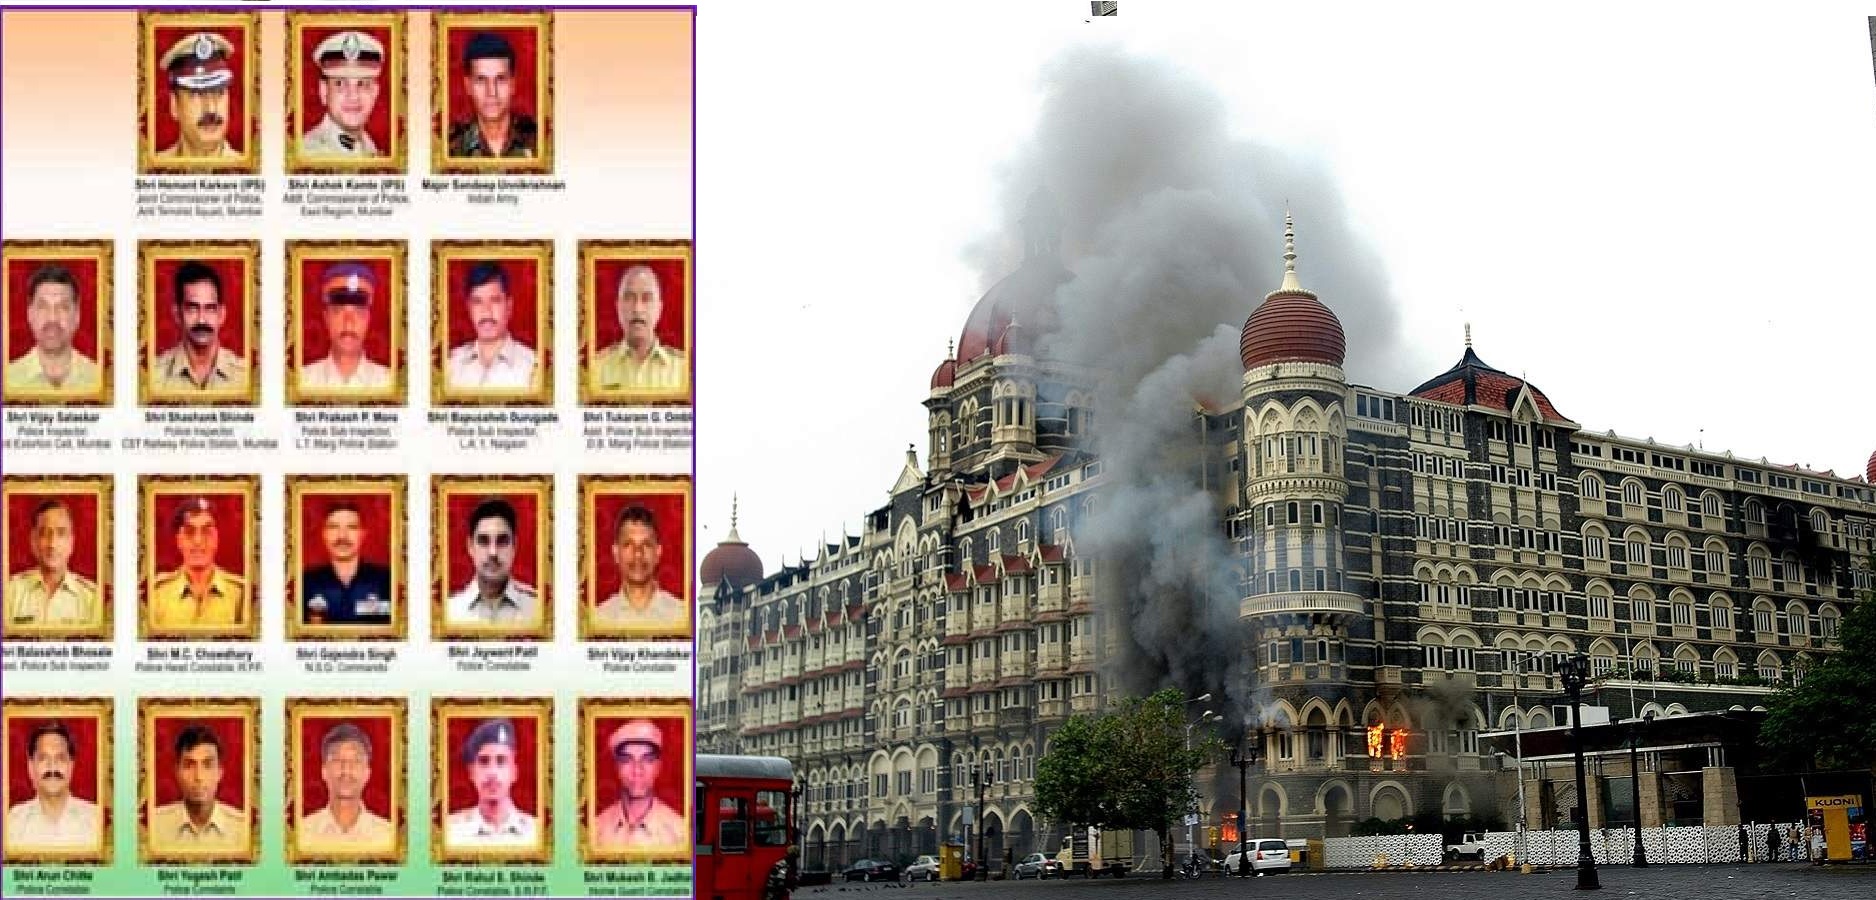 2008 terrorist attacks